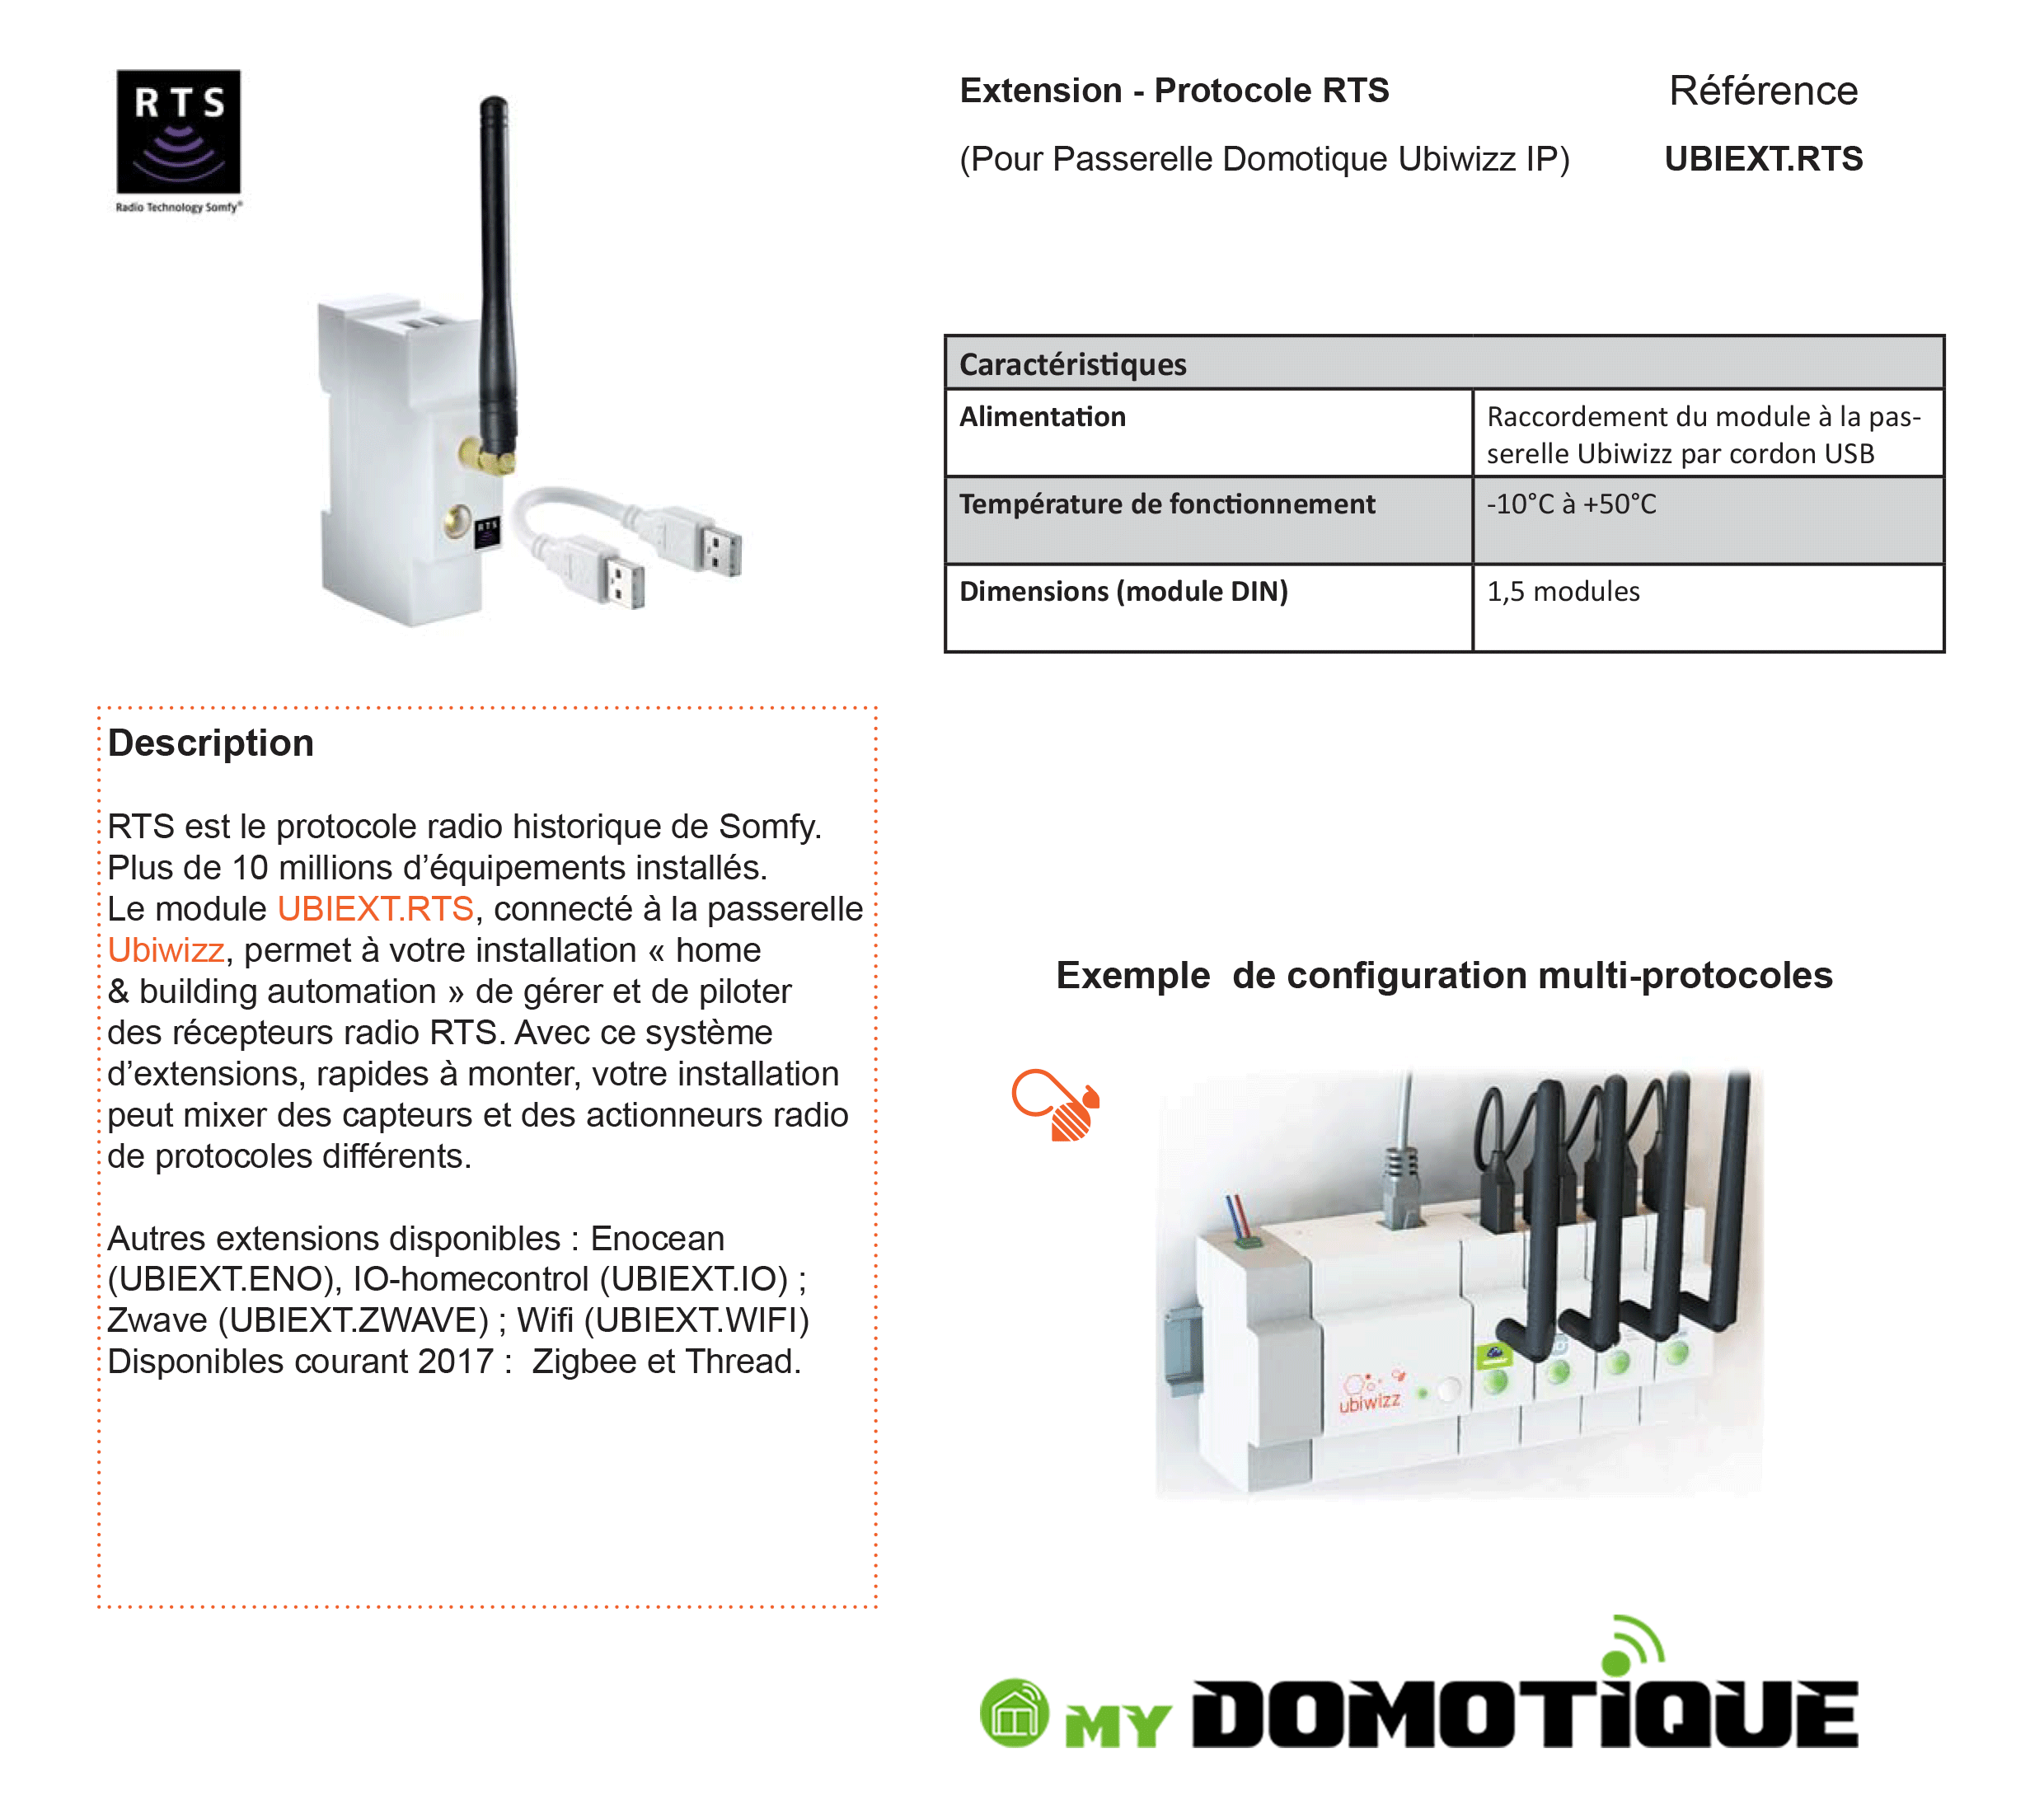 Extension Io homecontrol pour Passerelle Domotique Ubiwizz